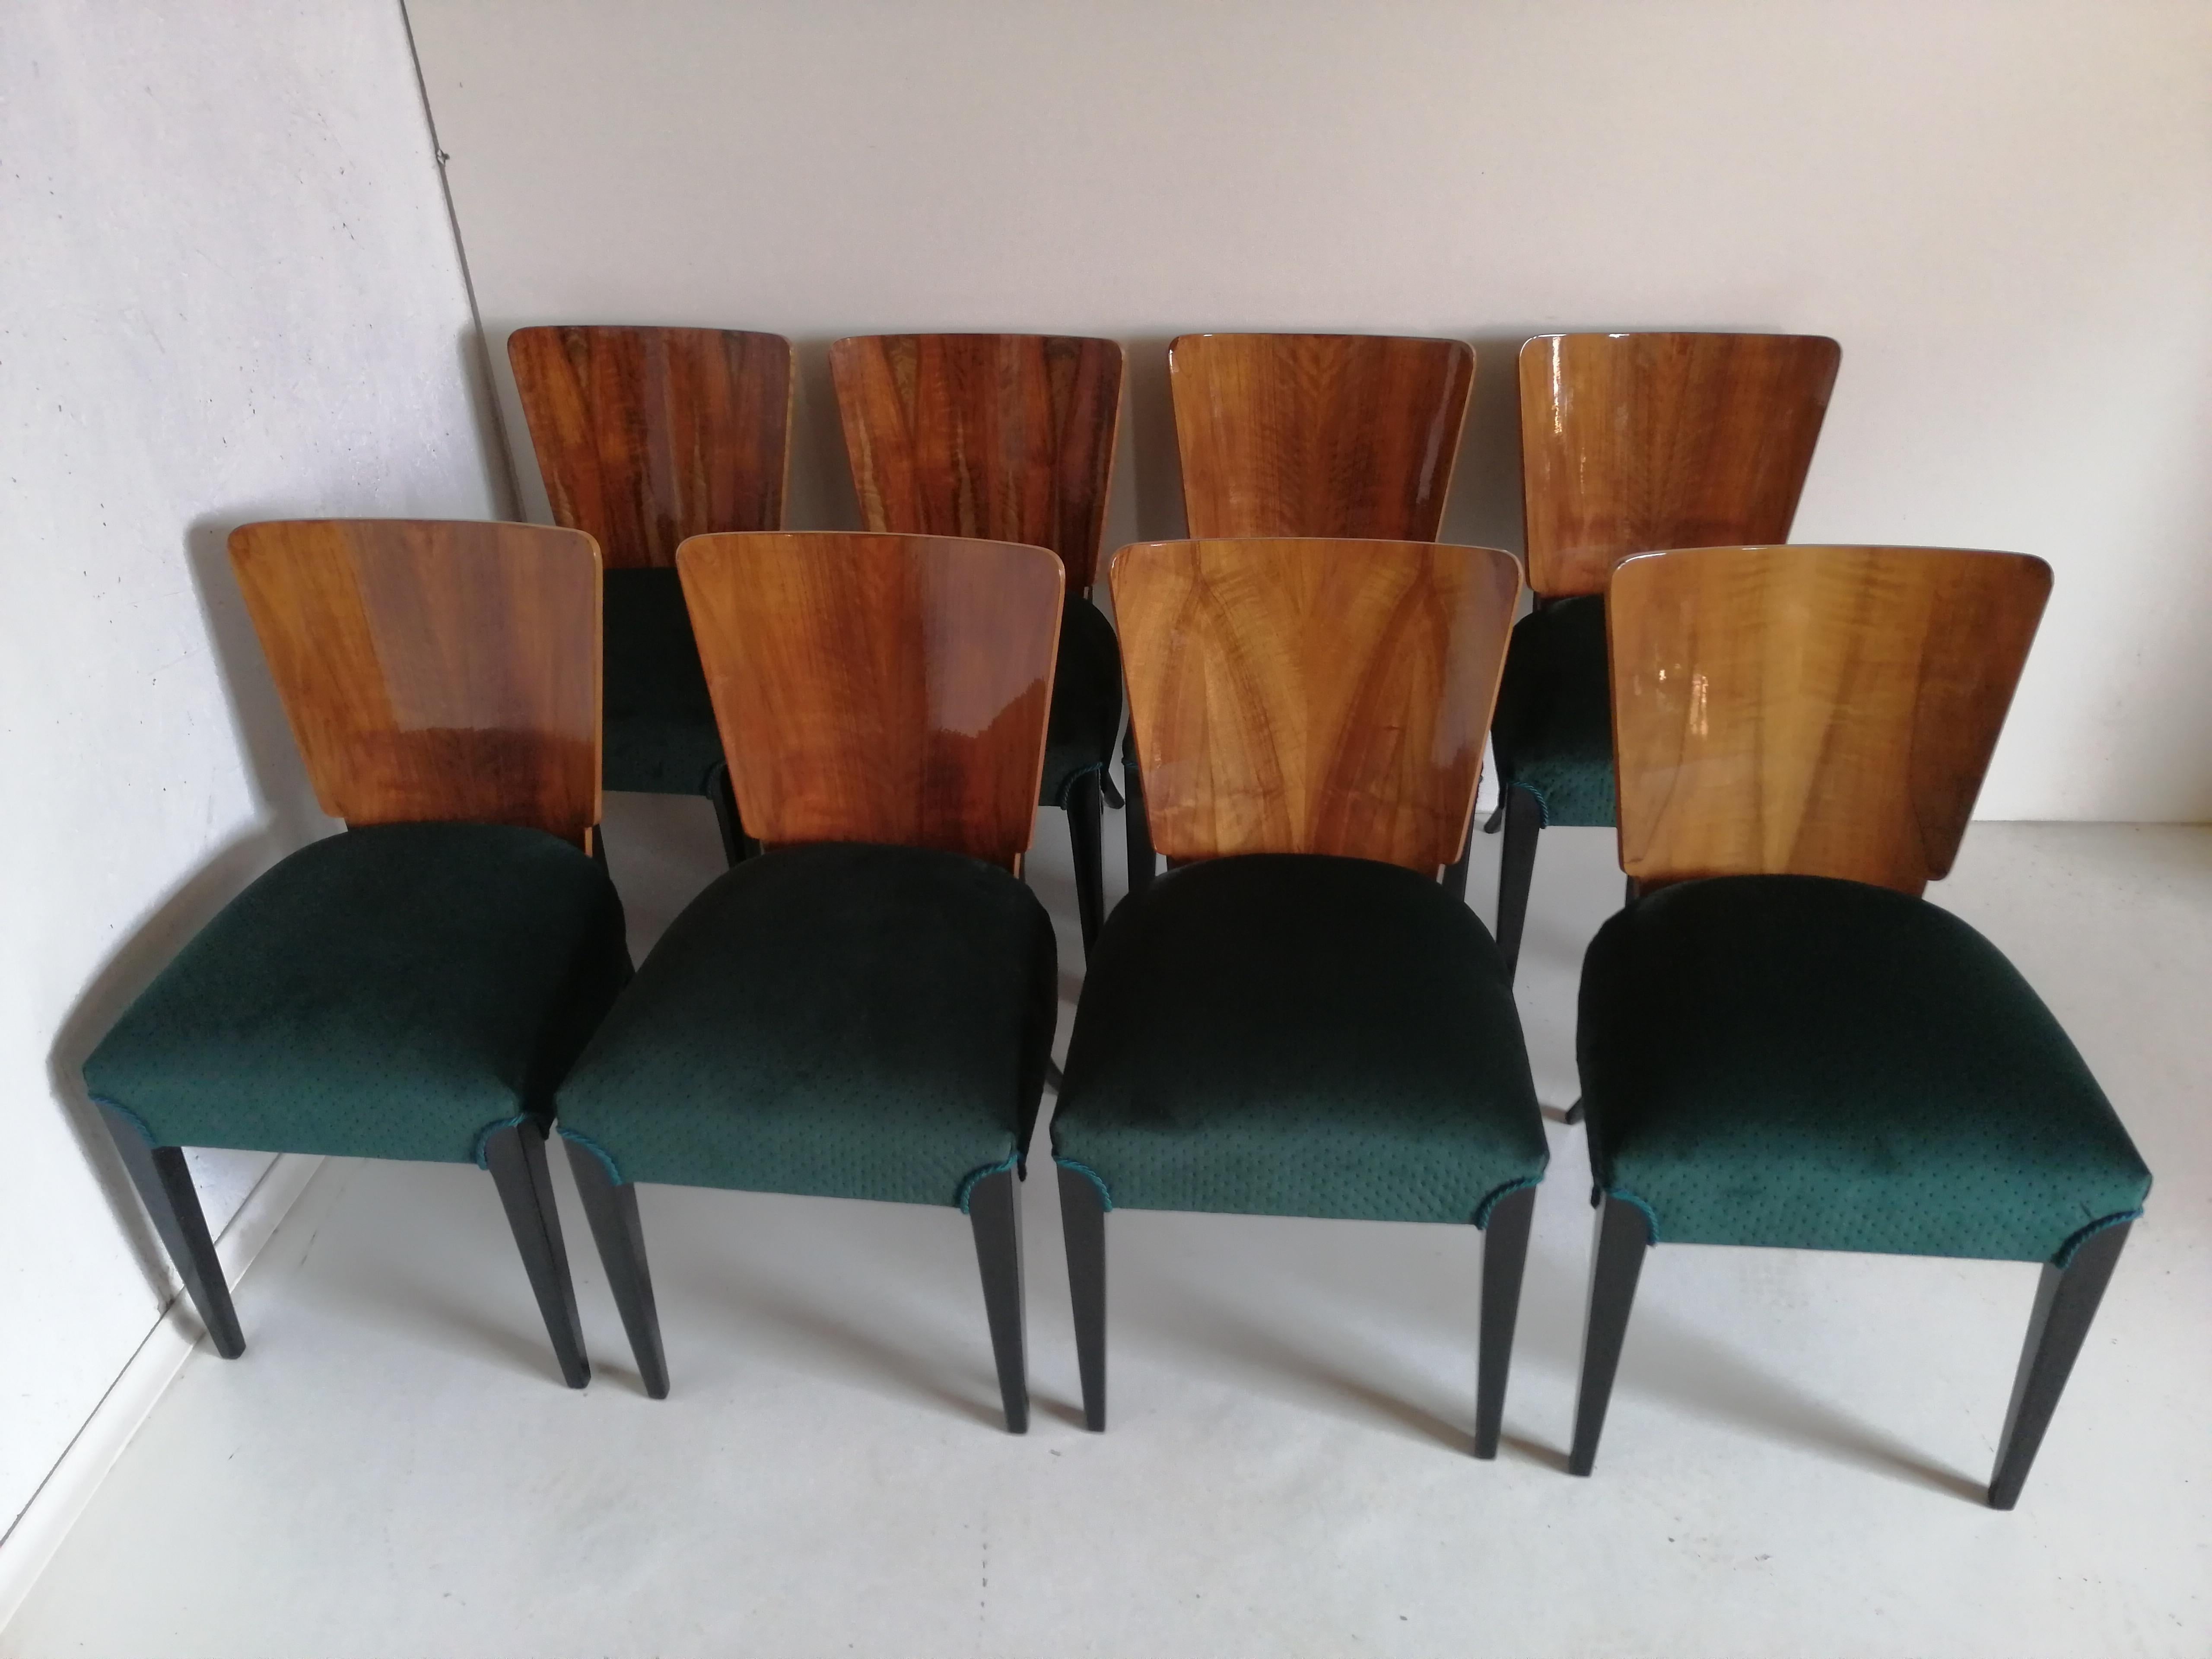 Czech Art Deco 8 Chairs J. Halabala from 1940